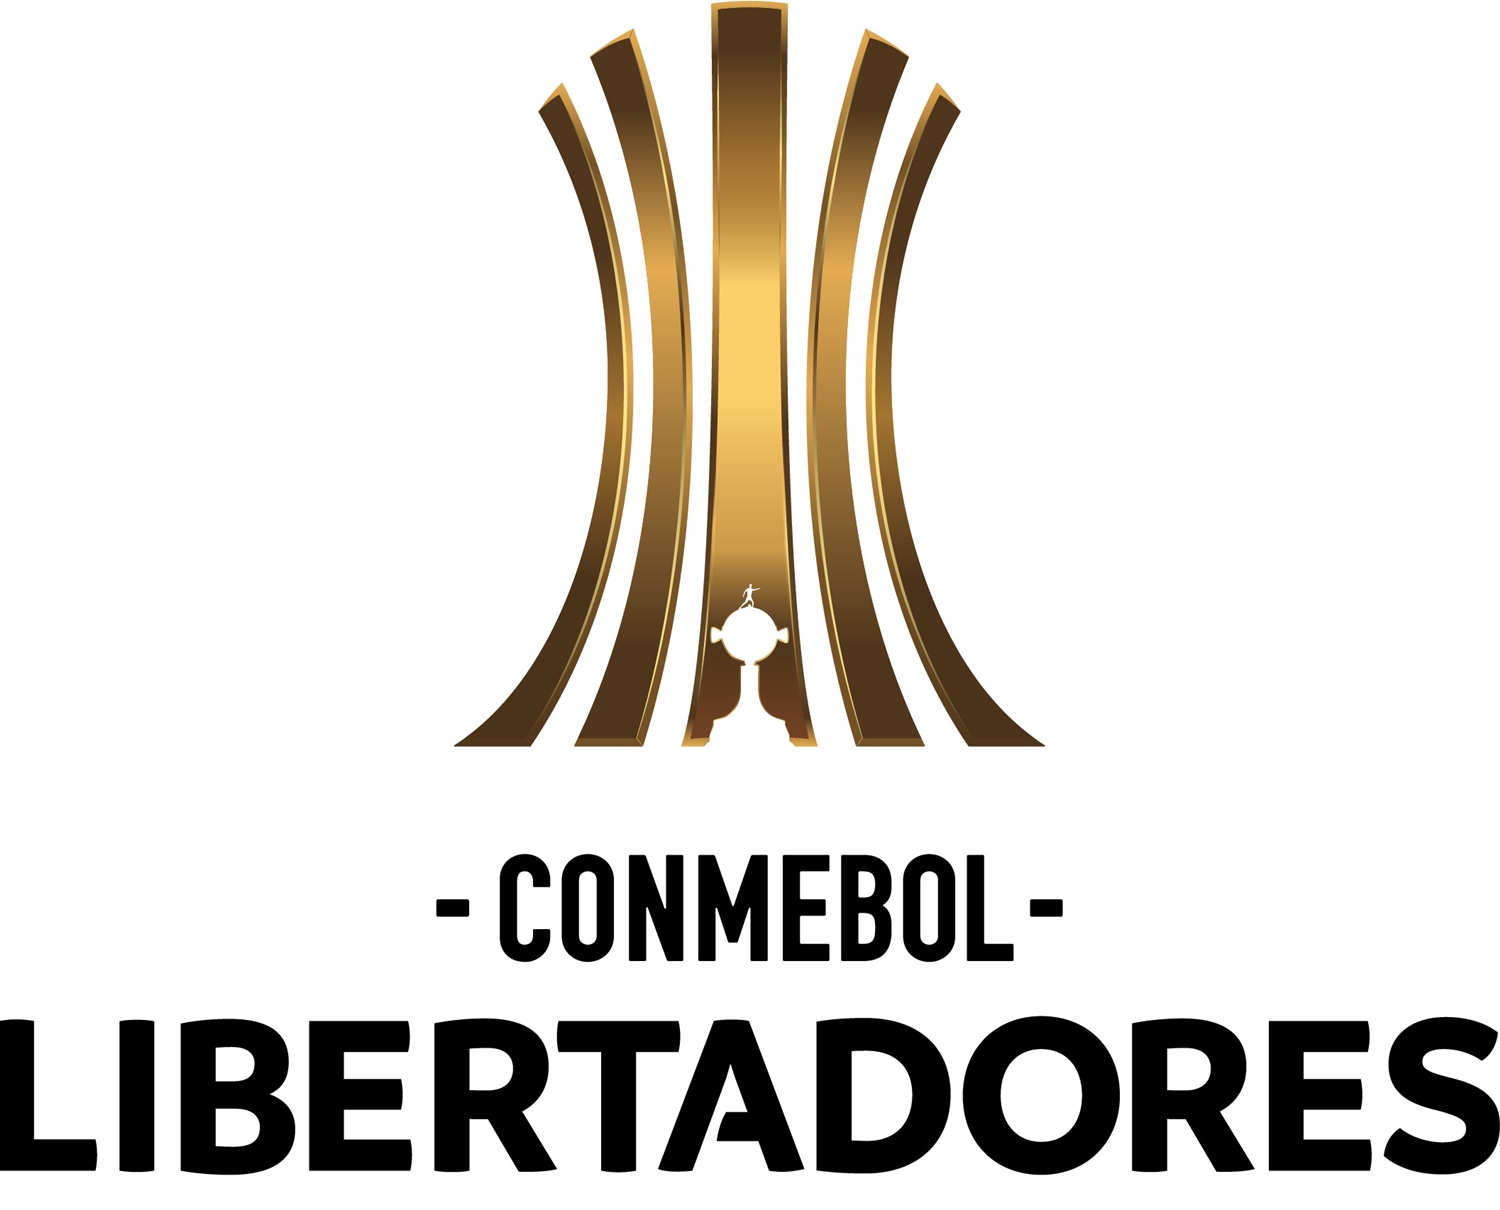 Conmebol - Libertadores